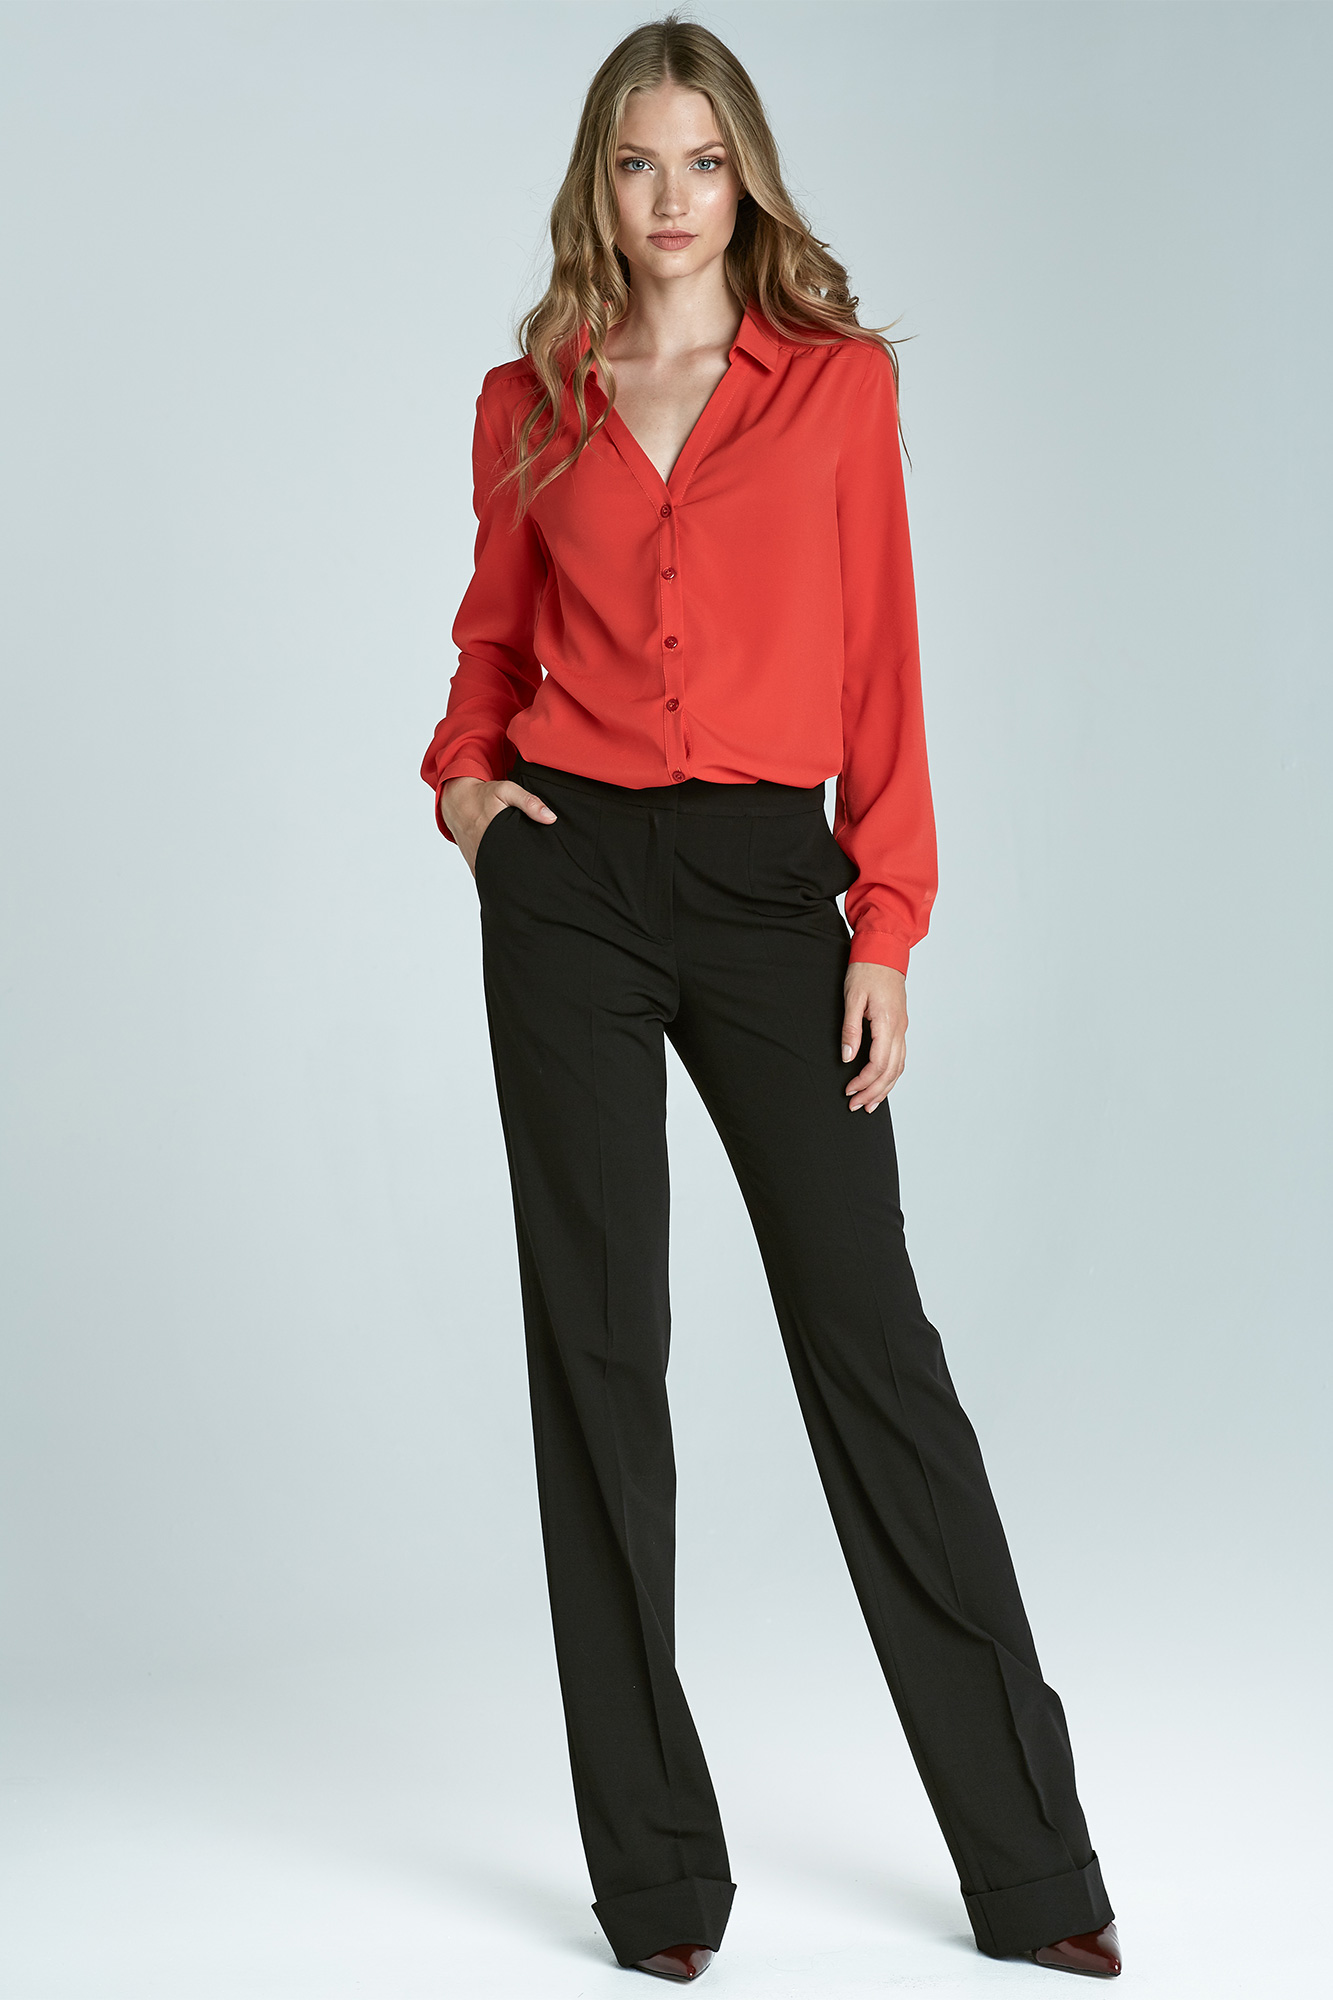 Pantalon ample pour femme avec chemisier rouge, décolleté en V